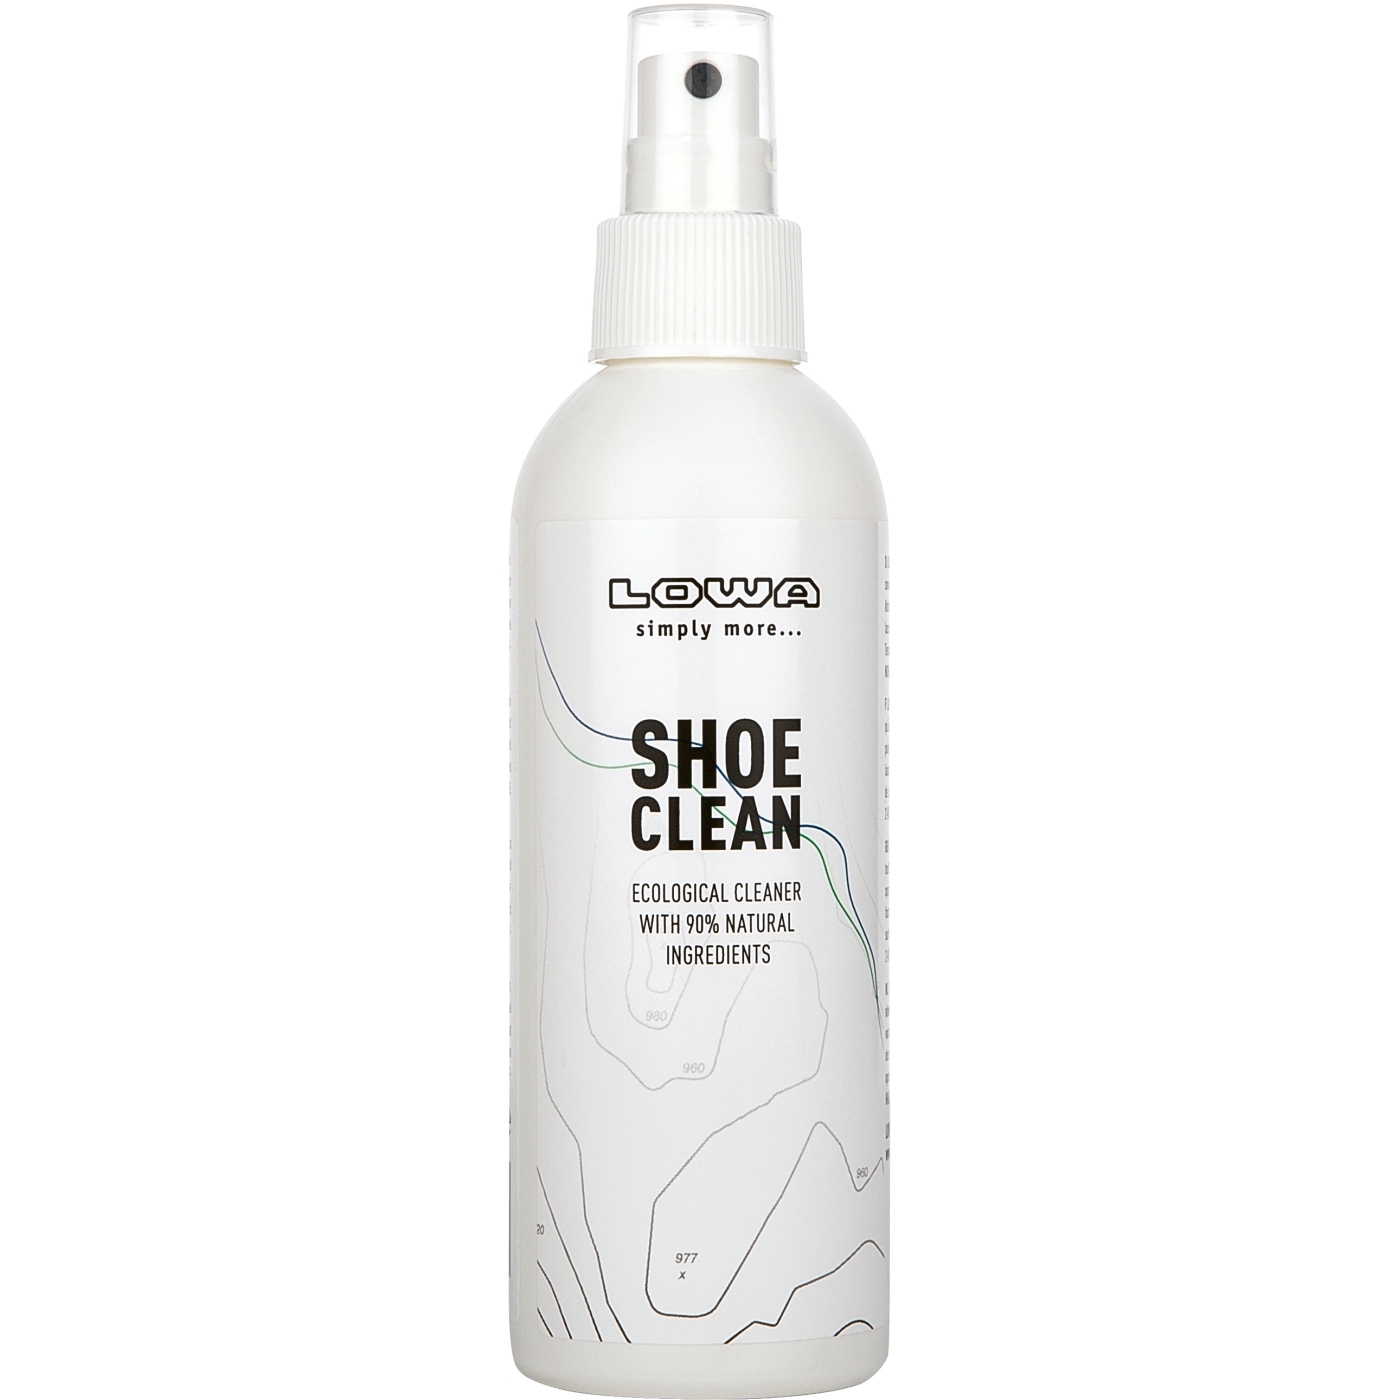 Produktbild von LOWA Shoe Clean Schuhreinigungsmittel - 200ml